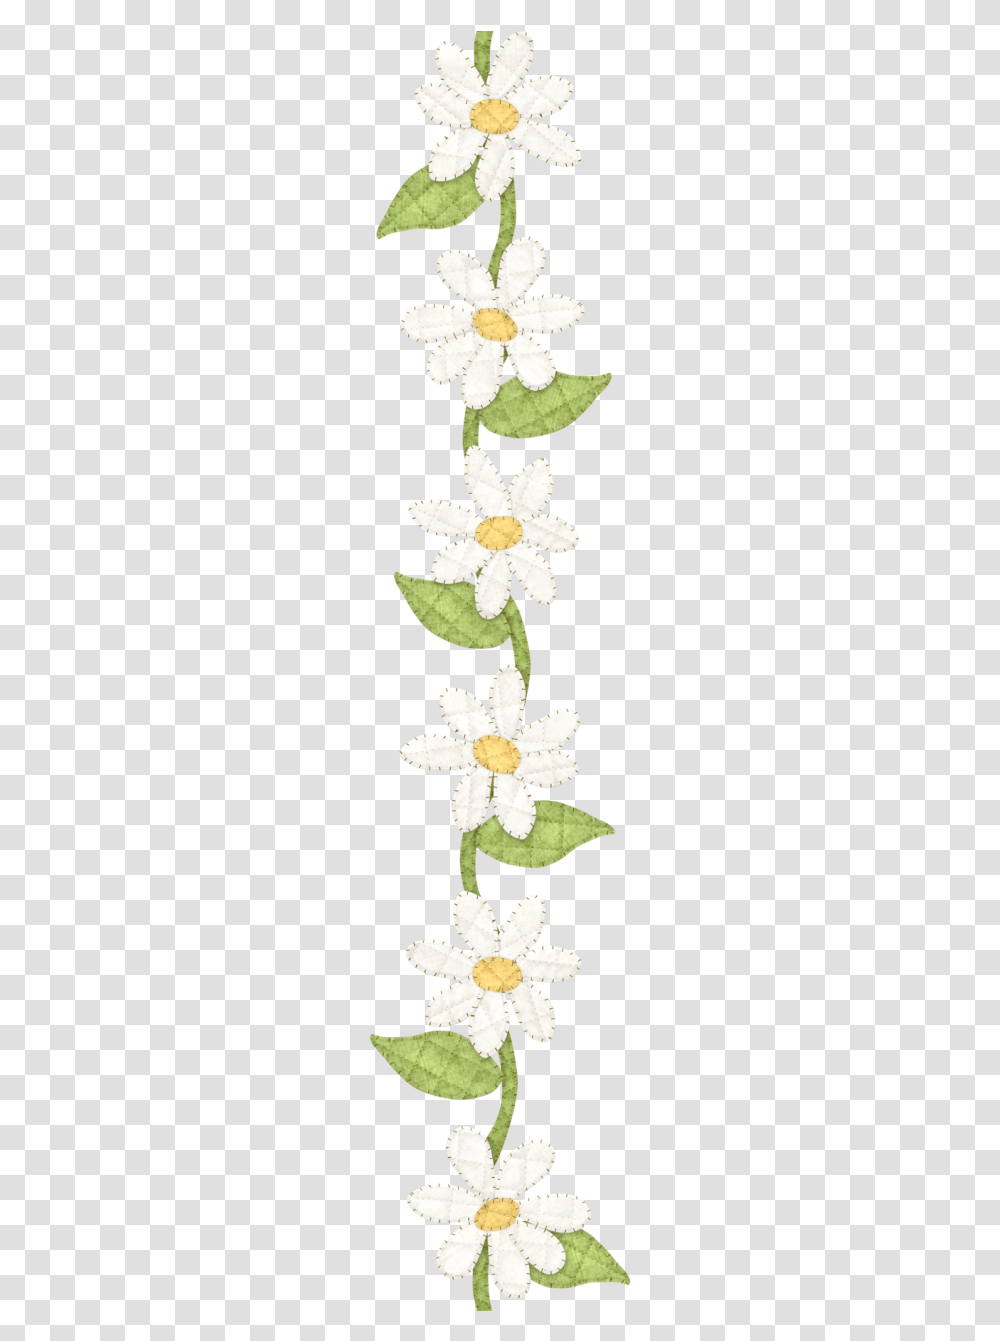 Daisy Clipart Daisy Chain Clipart Daisy Chain, Plant, Flower, Petal, Anther Transparent Png